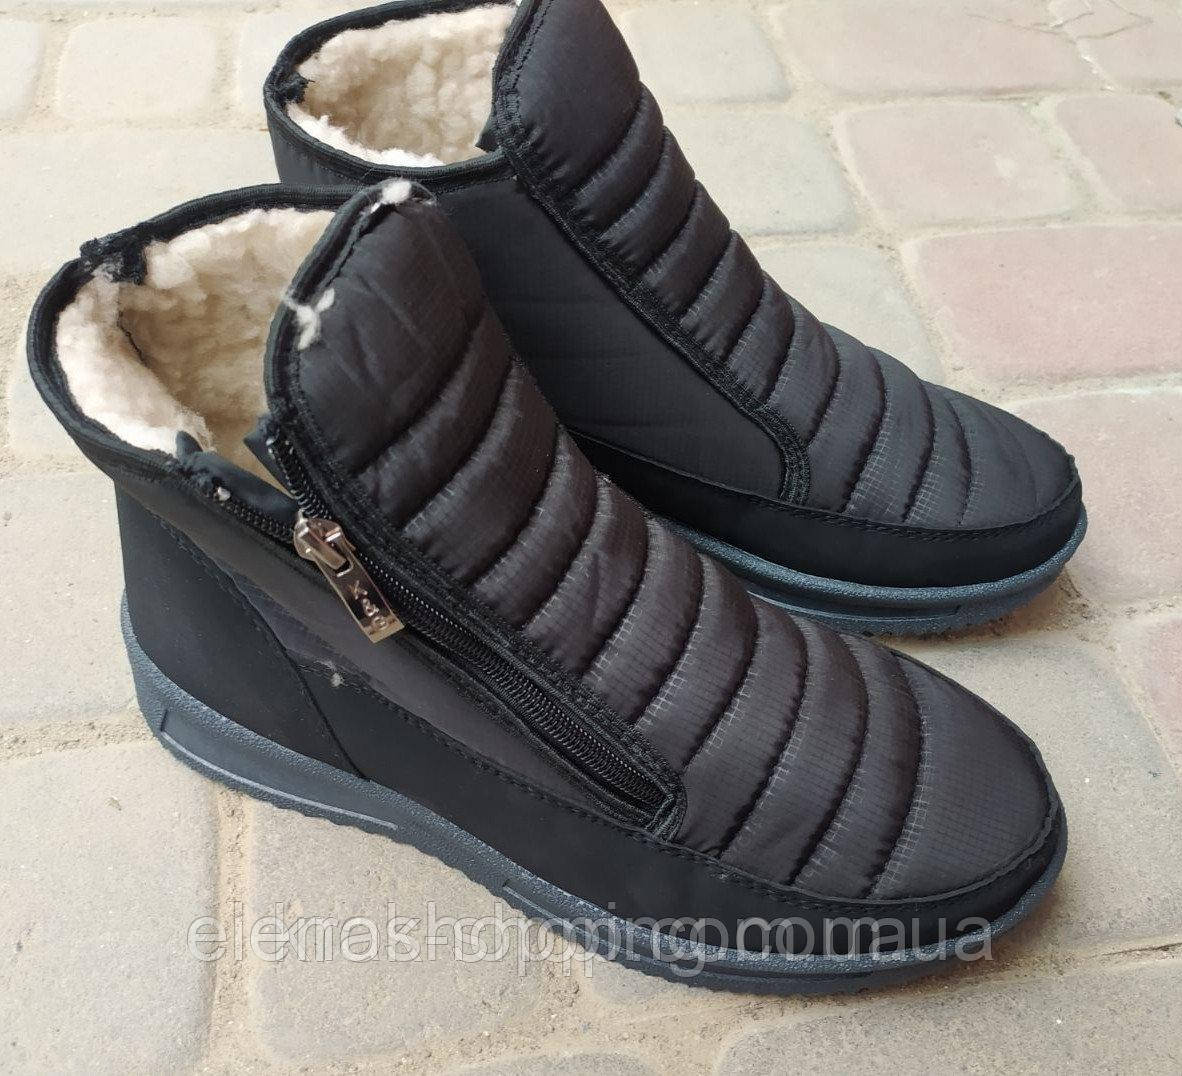 Чоловічі черевики зимові KG (код 4400-00) р41